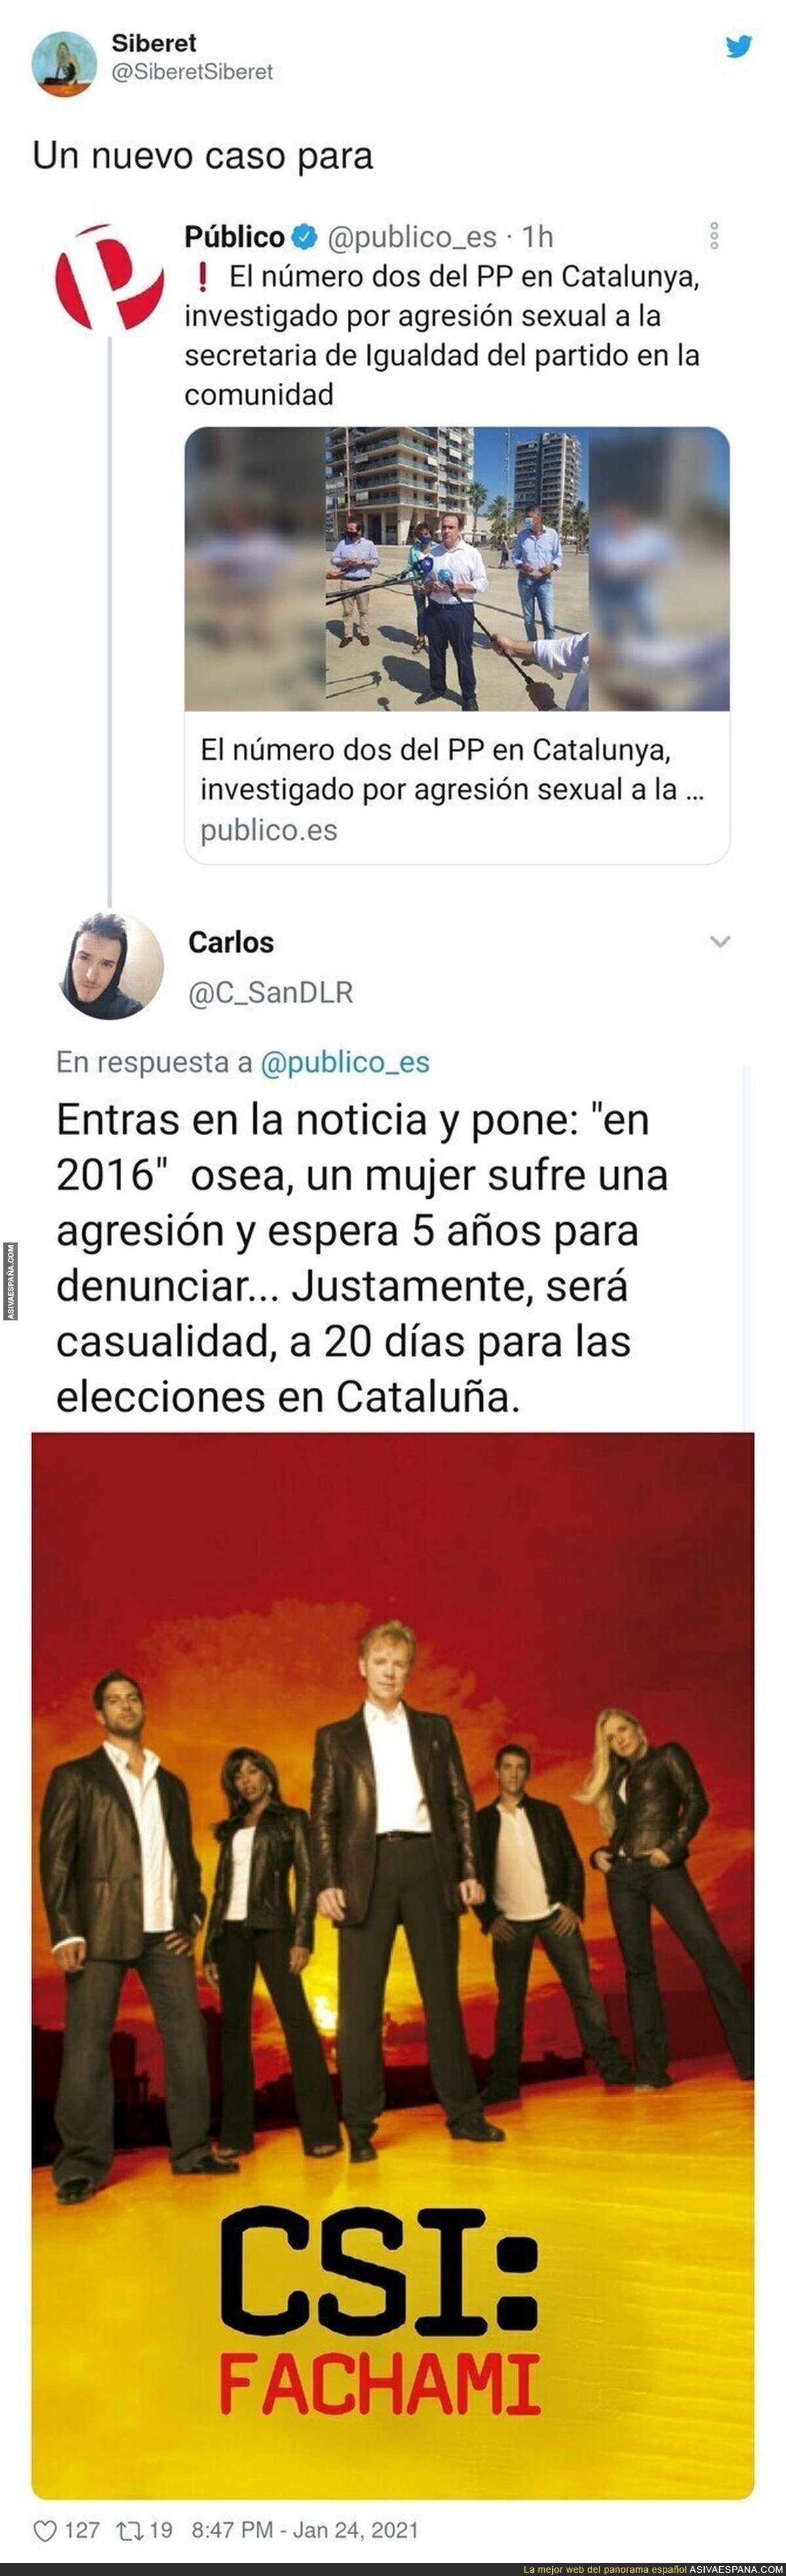 Contra todo pronóstico el PP de Catalunya no ganará las elecciones por este caso